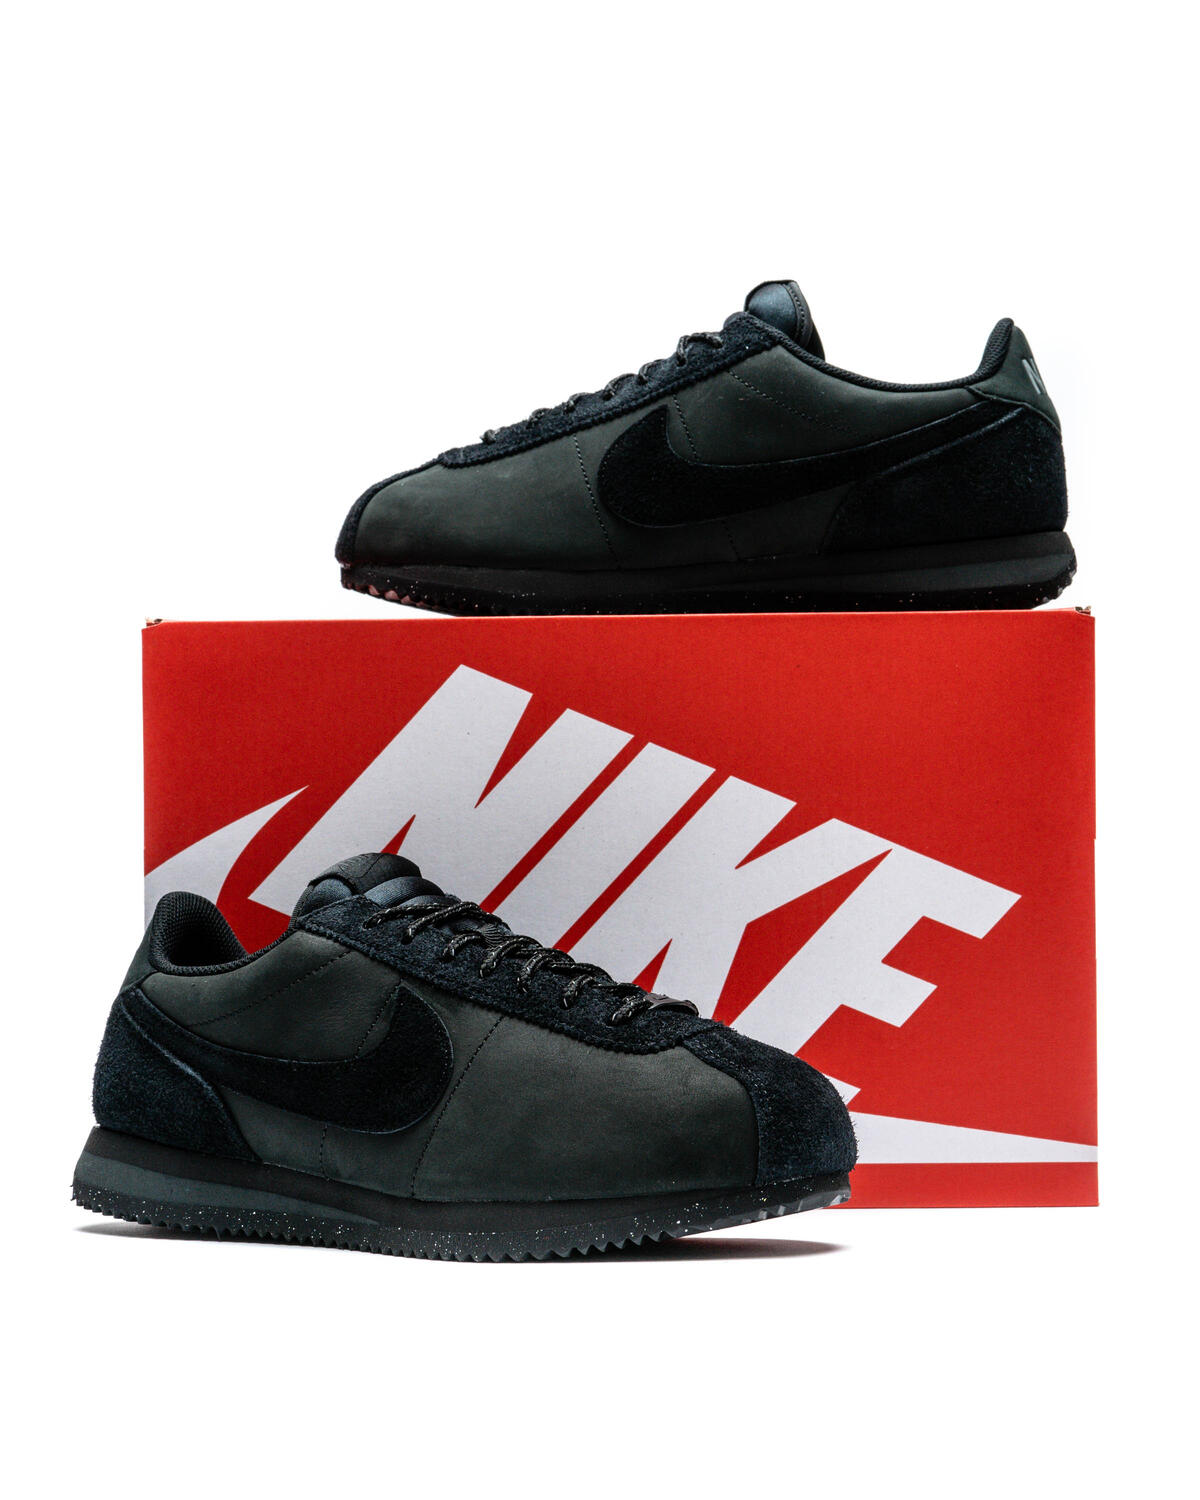 Nike WMNS Cortez PRM Triple Black FJ5465-010